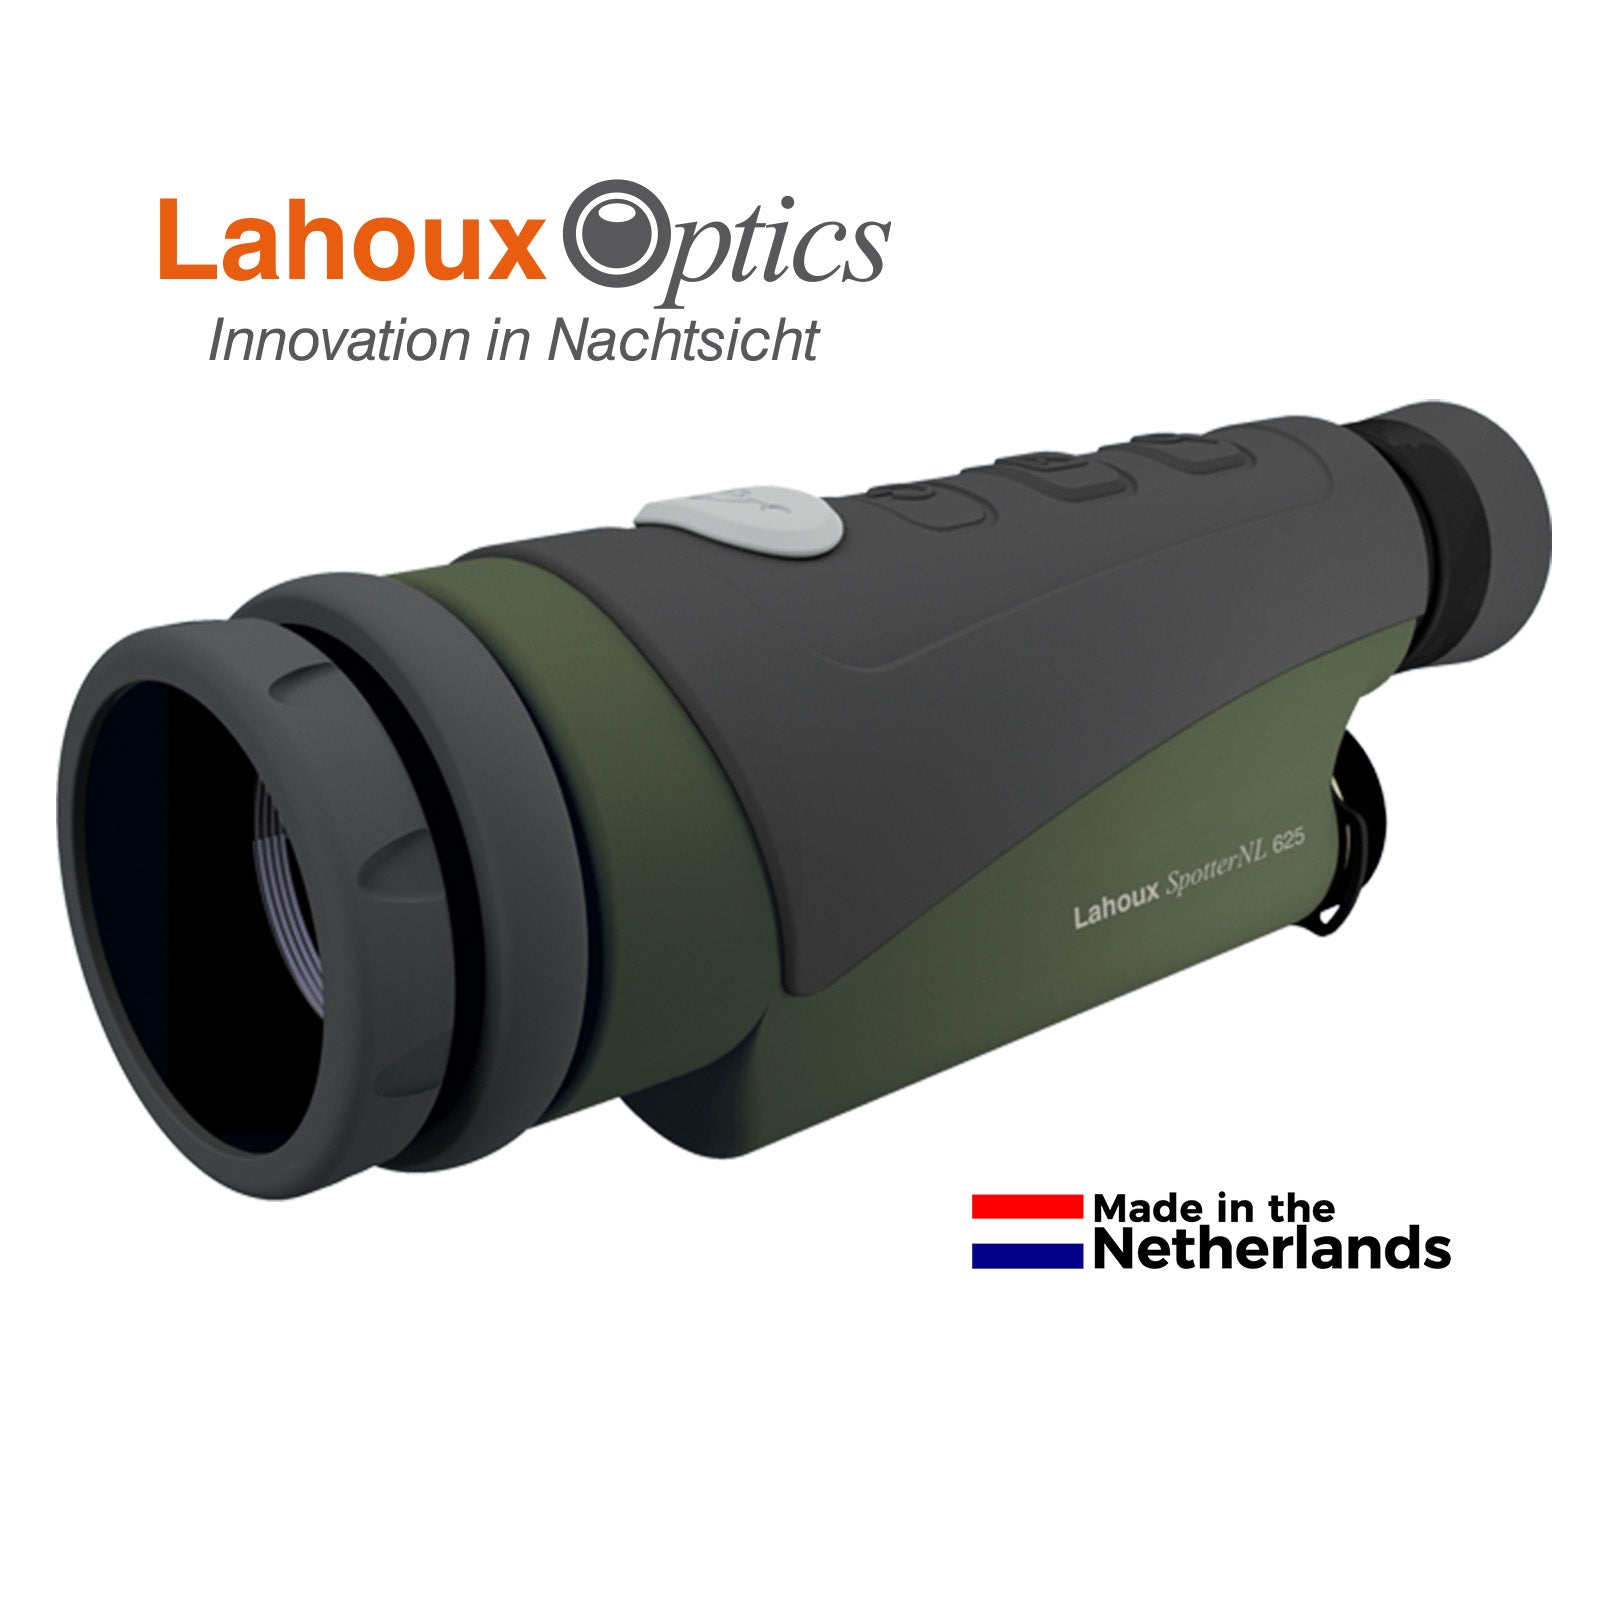 Es handelt sich hier um LAHOUX Spotter NL 625 Wärmebildkamera für die Jagd.